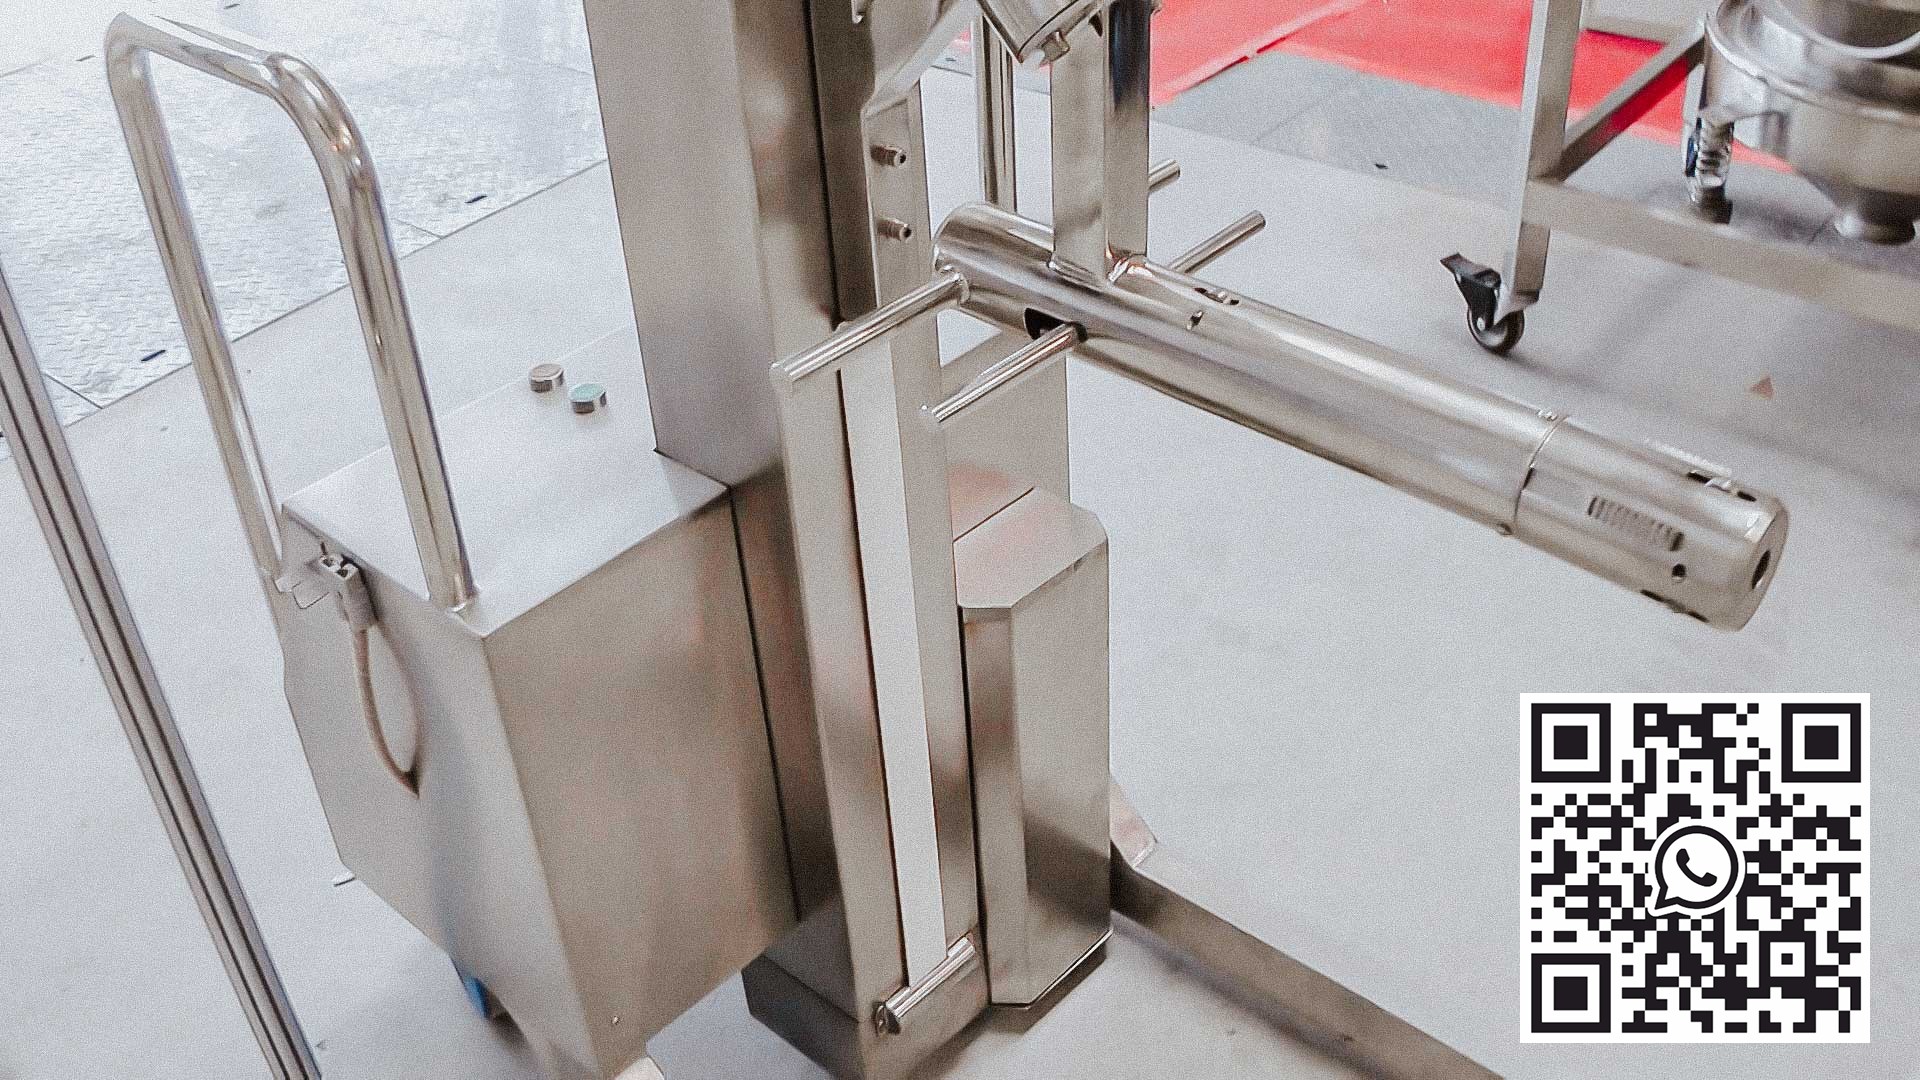 Equipo automático para levantar contenedores con polvos en una fábrica farmacéutica